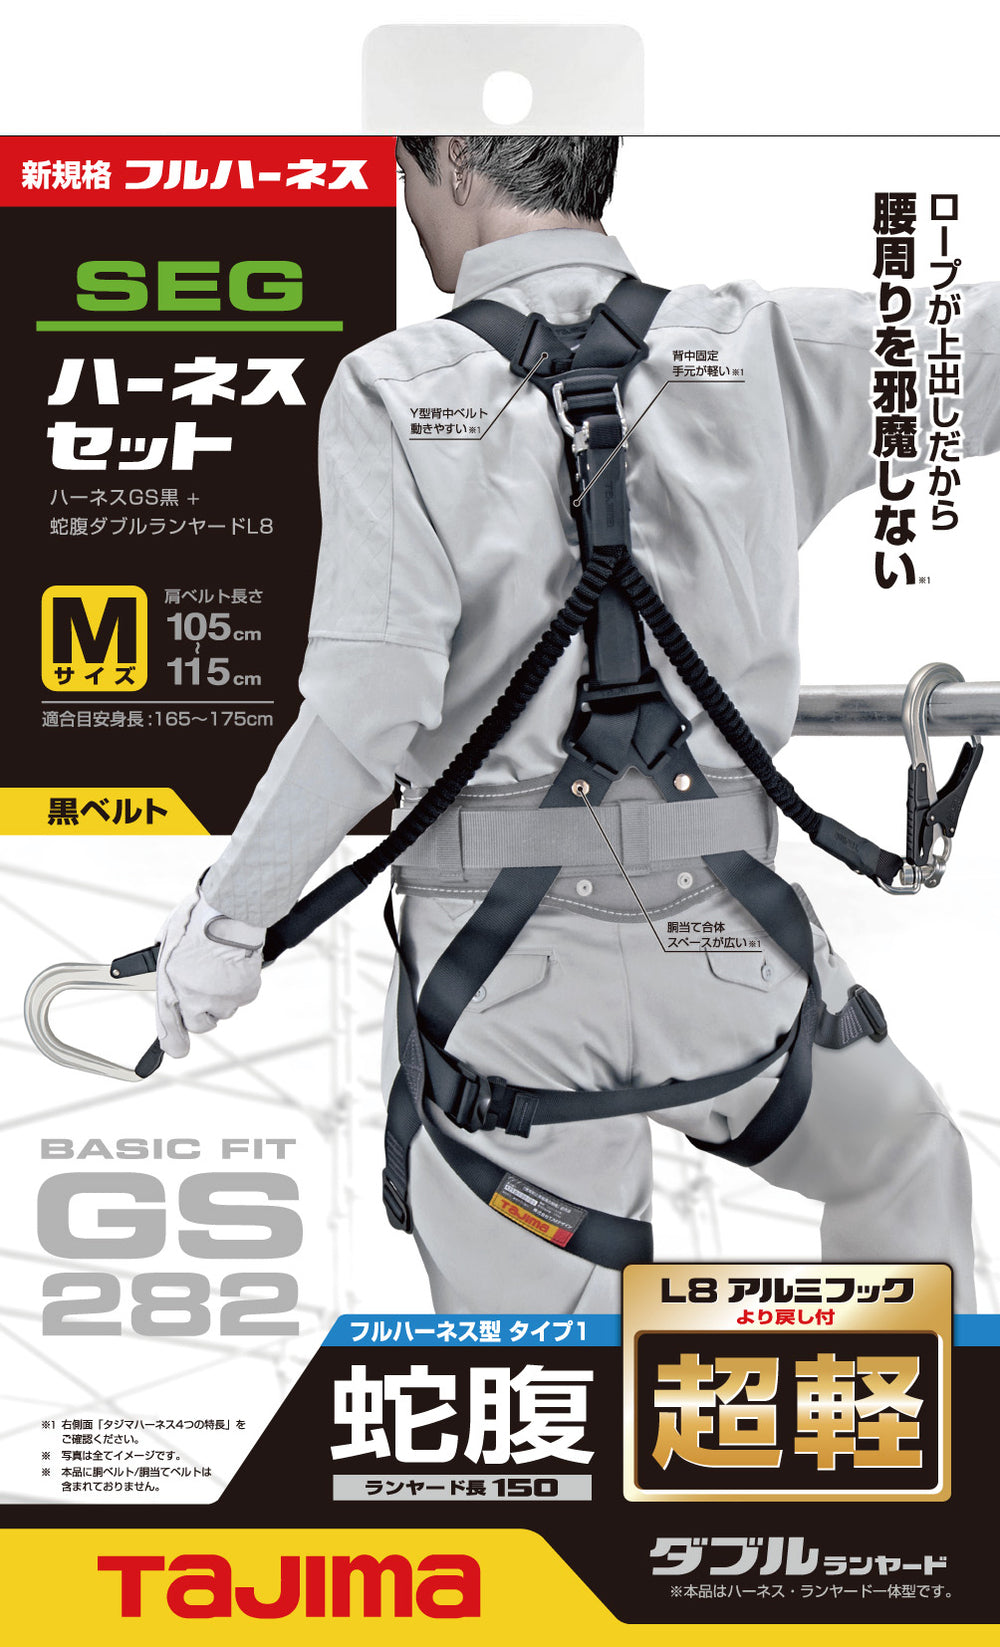 Tajima new standard full harness GS282 black bellows double L8 set S/M/L